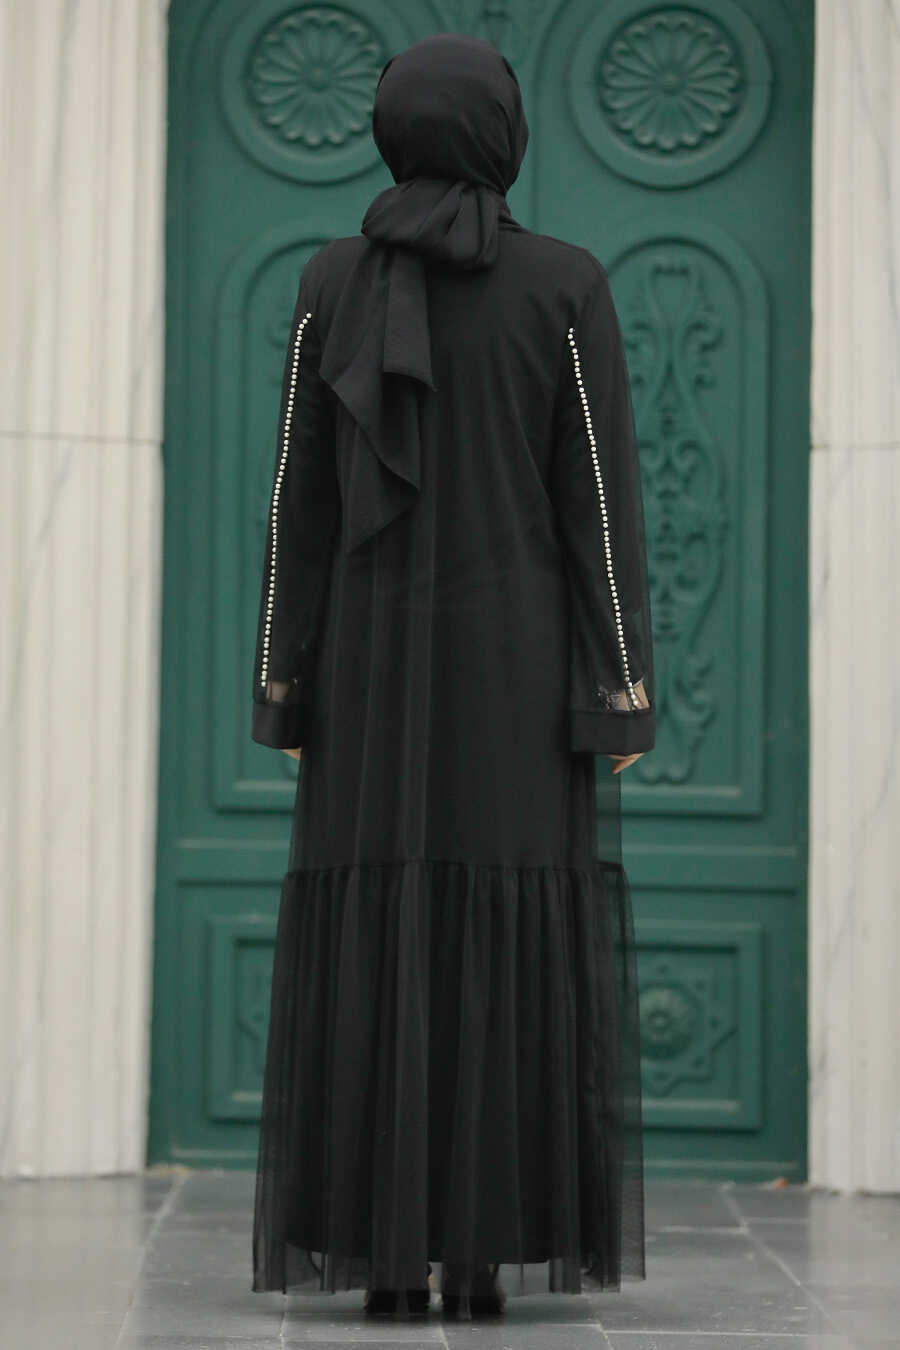 Neva Style - Black Abaya Hijab Double Suit 30101S